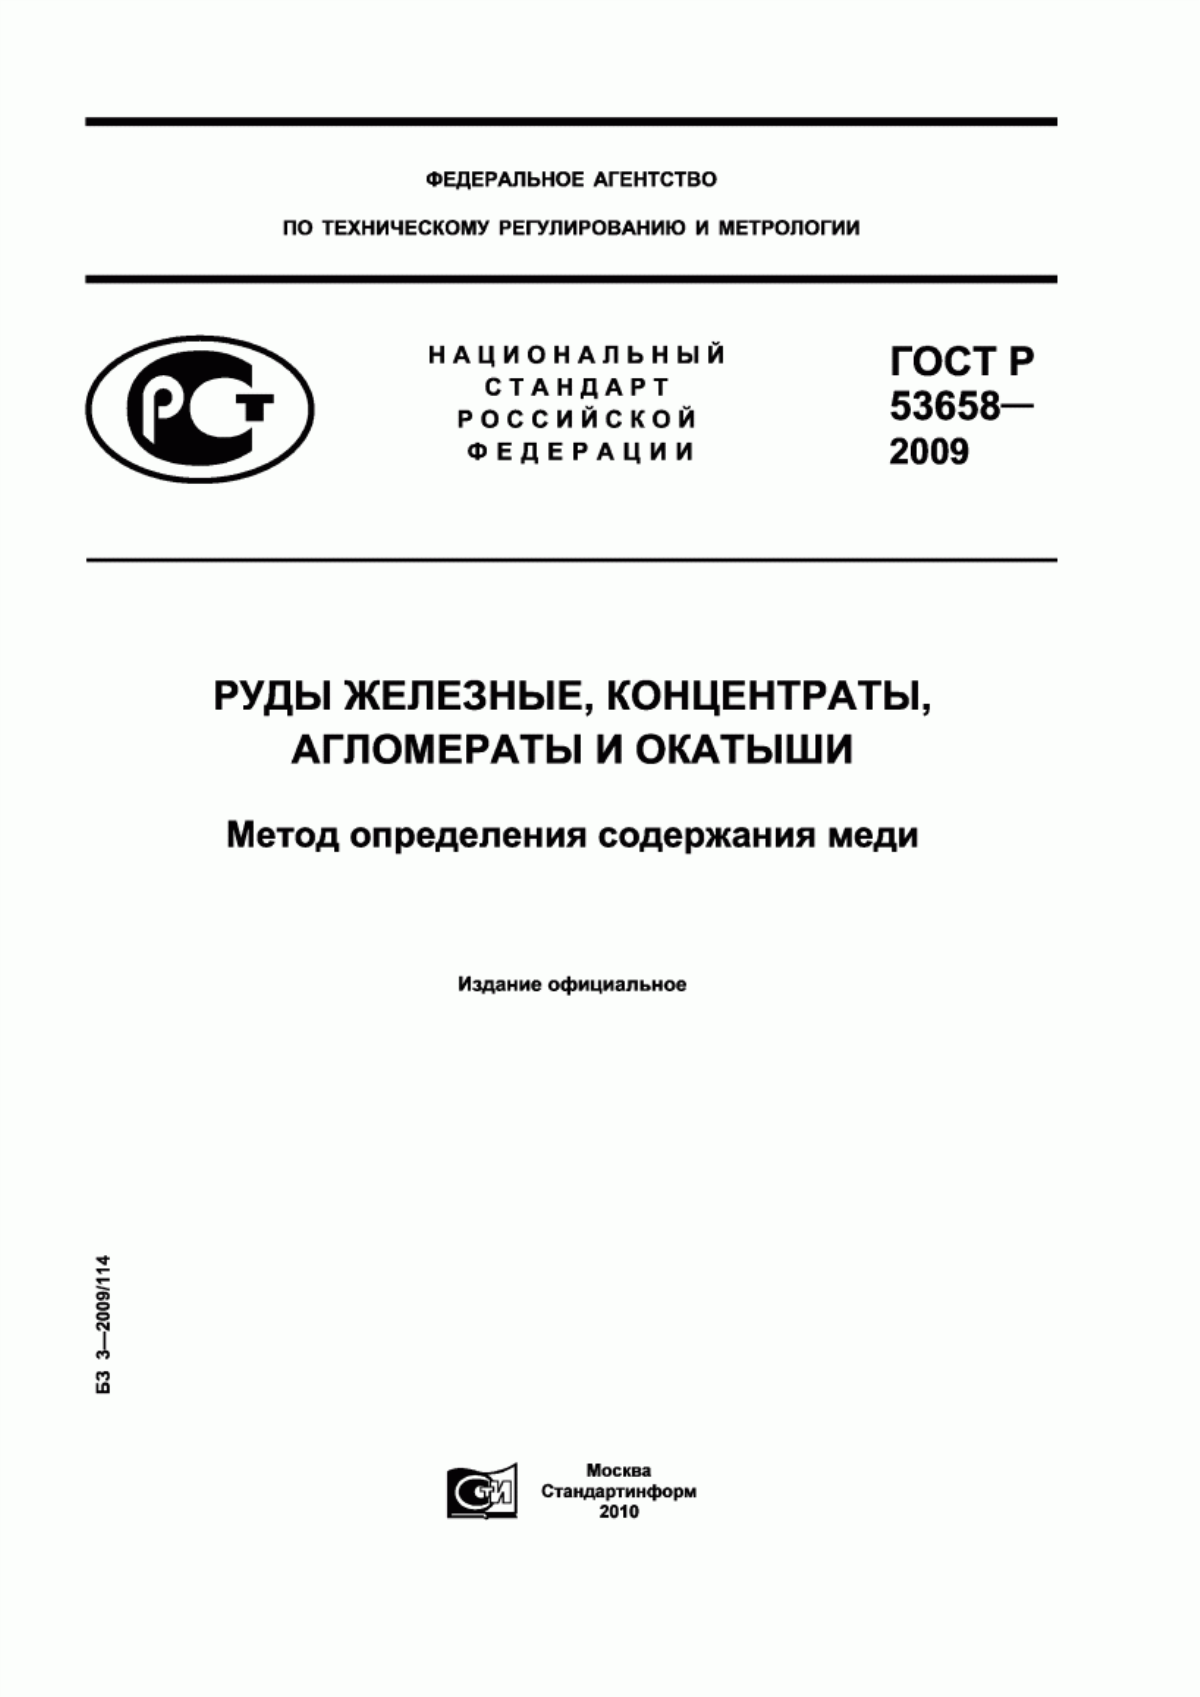 ГОСТ Р 53658-2009 Руды железные, концентраты, агломераты и окатыши. Метод определения содержания меди